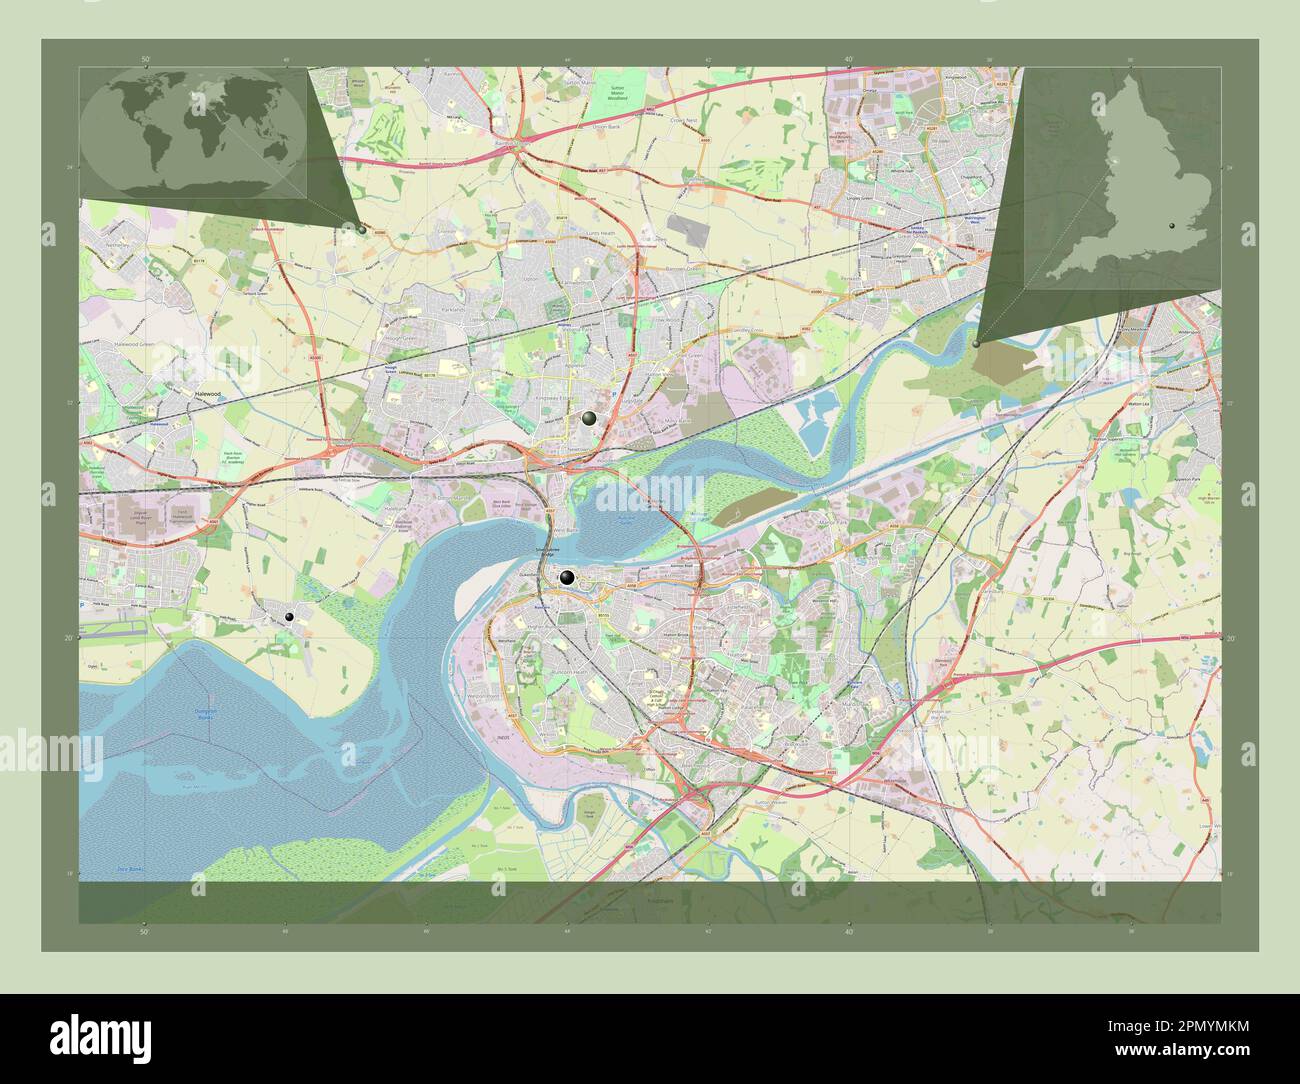 Halton, eine Einheit Englands - Großbritanniens. Straßenkarte Öffnen. Standorte der wichtigsten Städte der Region. Eckkarten für zusätzliche Standorte Stockfoto